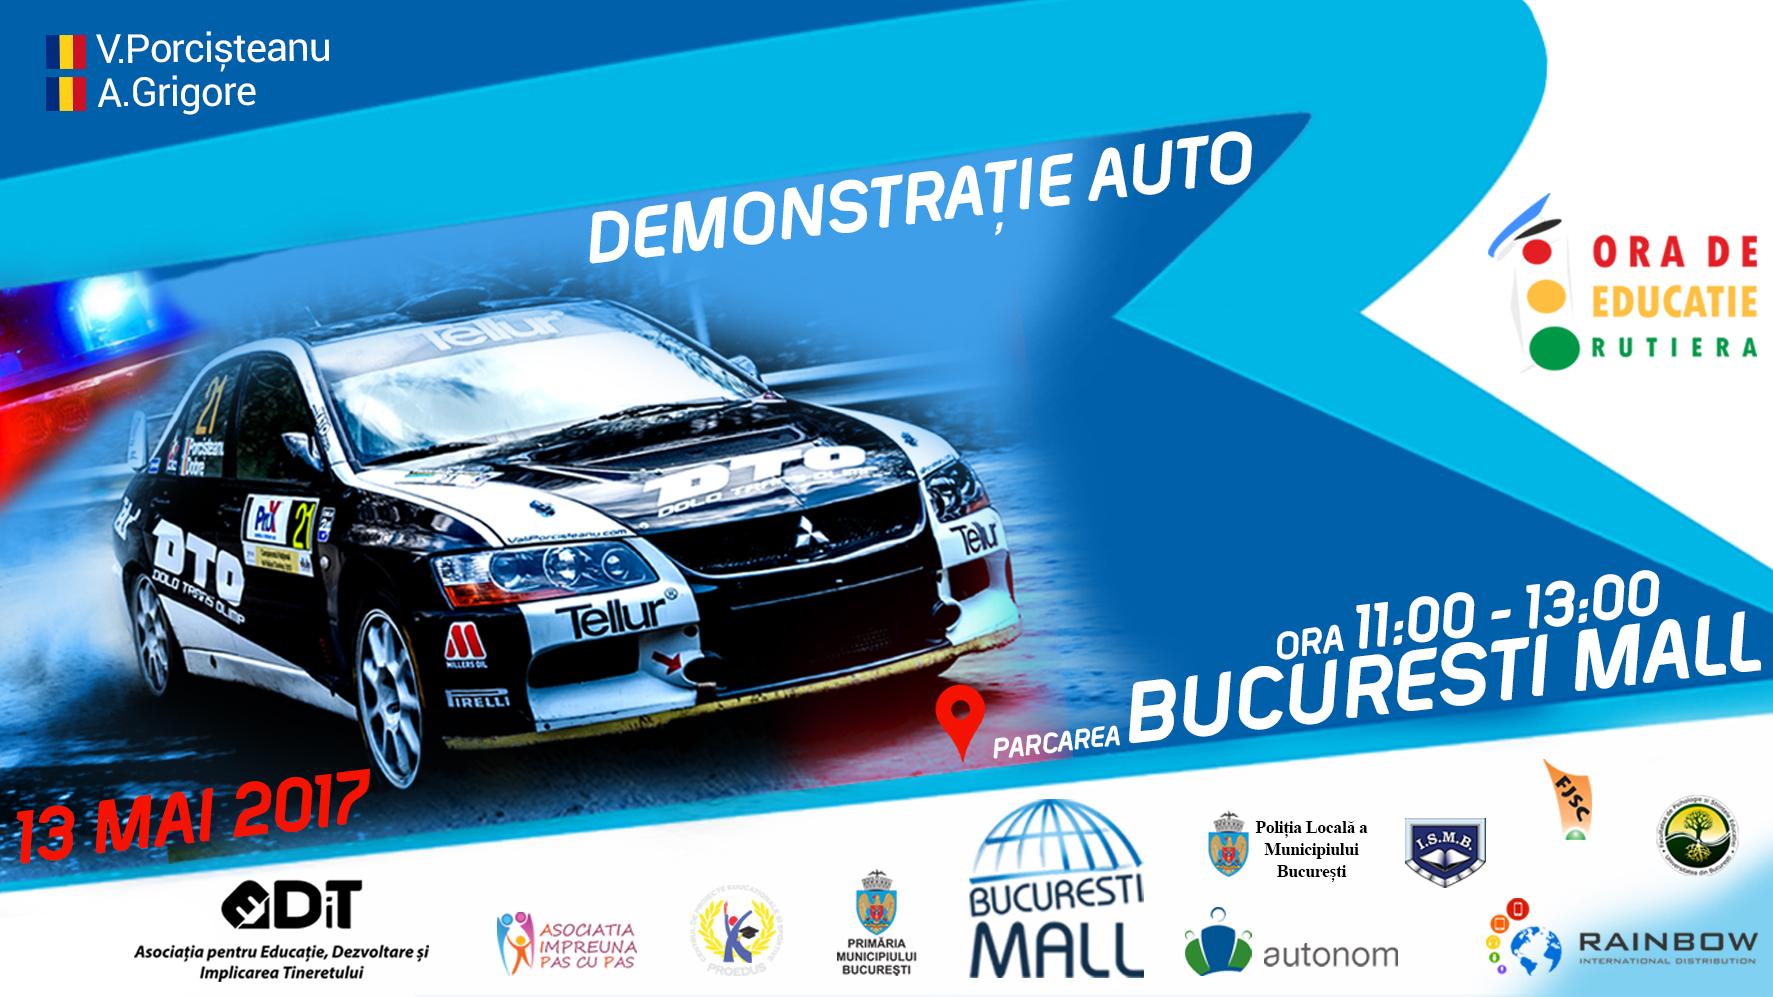 “Demonstraţie Auto” în parcarea Bucureşti Mall alături de Vali Porcişteanu şi Adrian Grigore